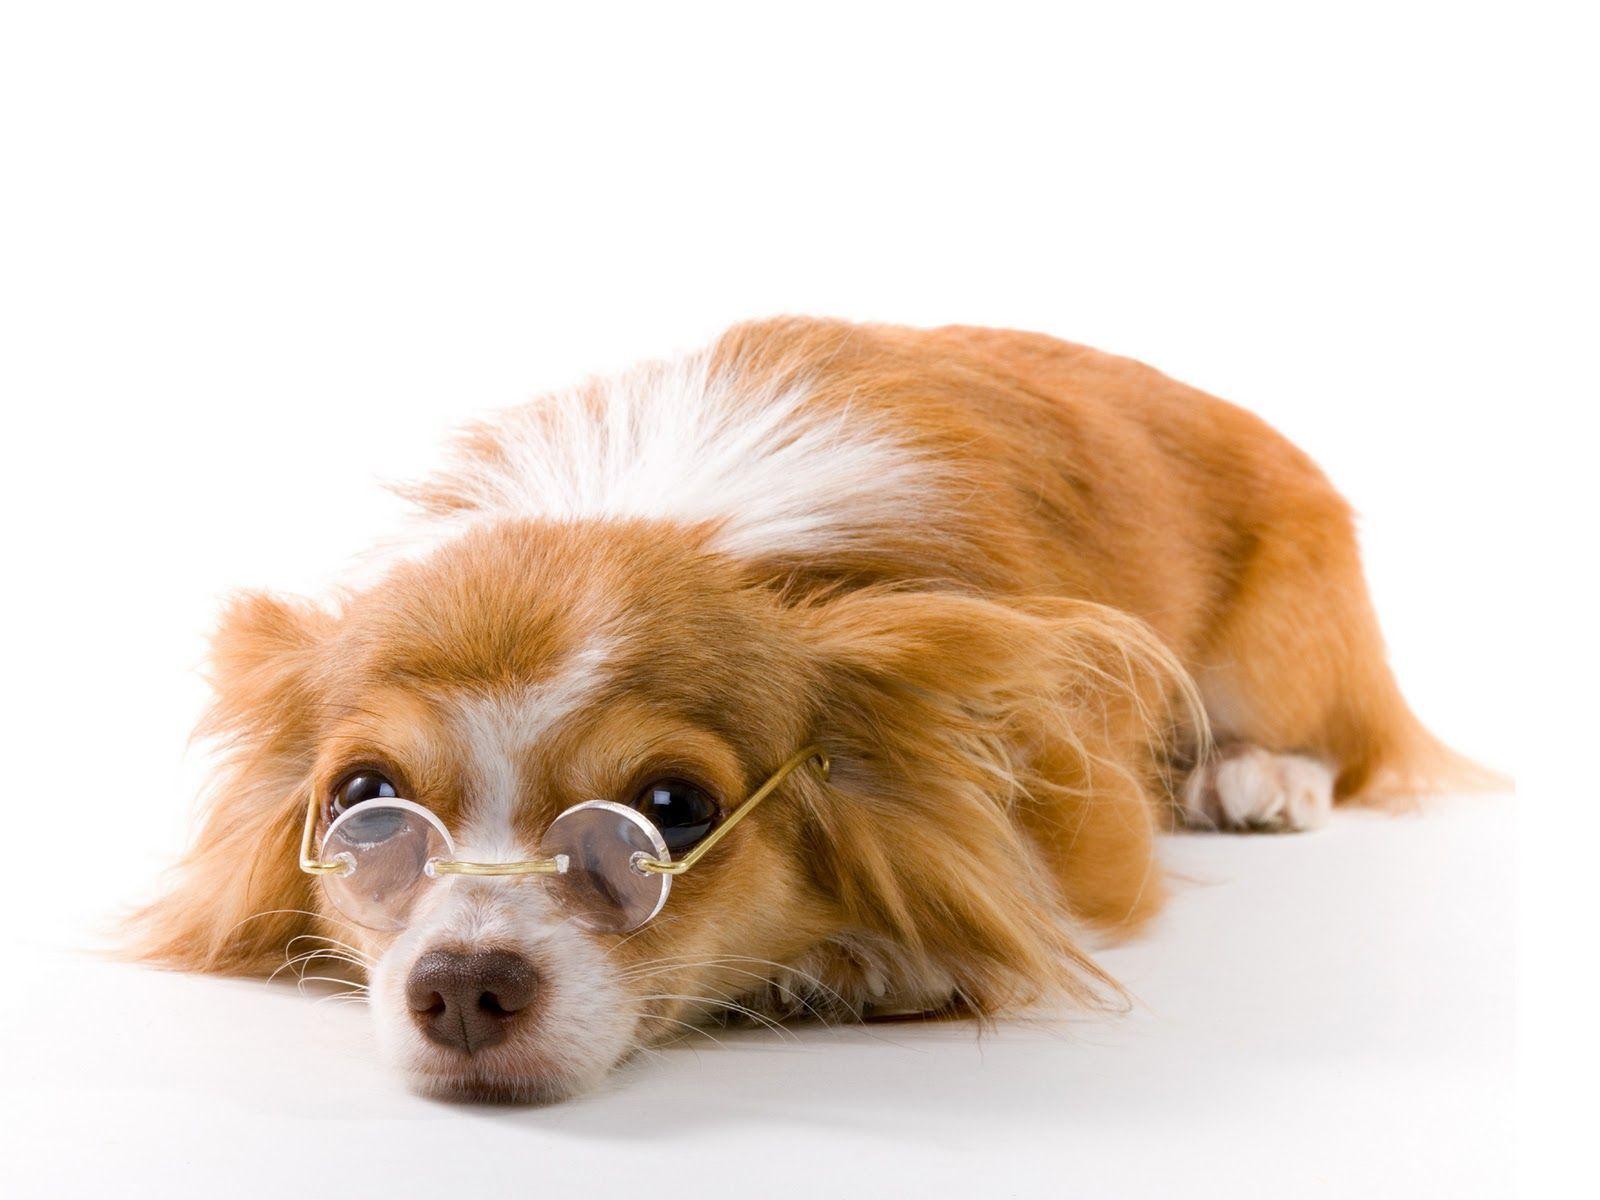 Best Hd Funny Dog Wallpaper - Large Dog Desktop Backgrounds , HD Wallpaper & Backgrounds